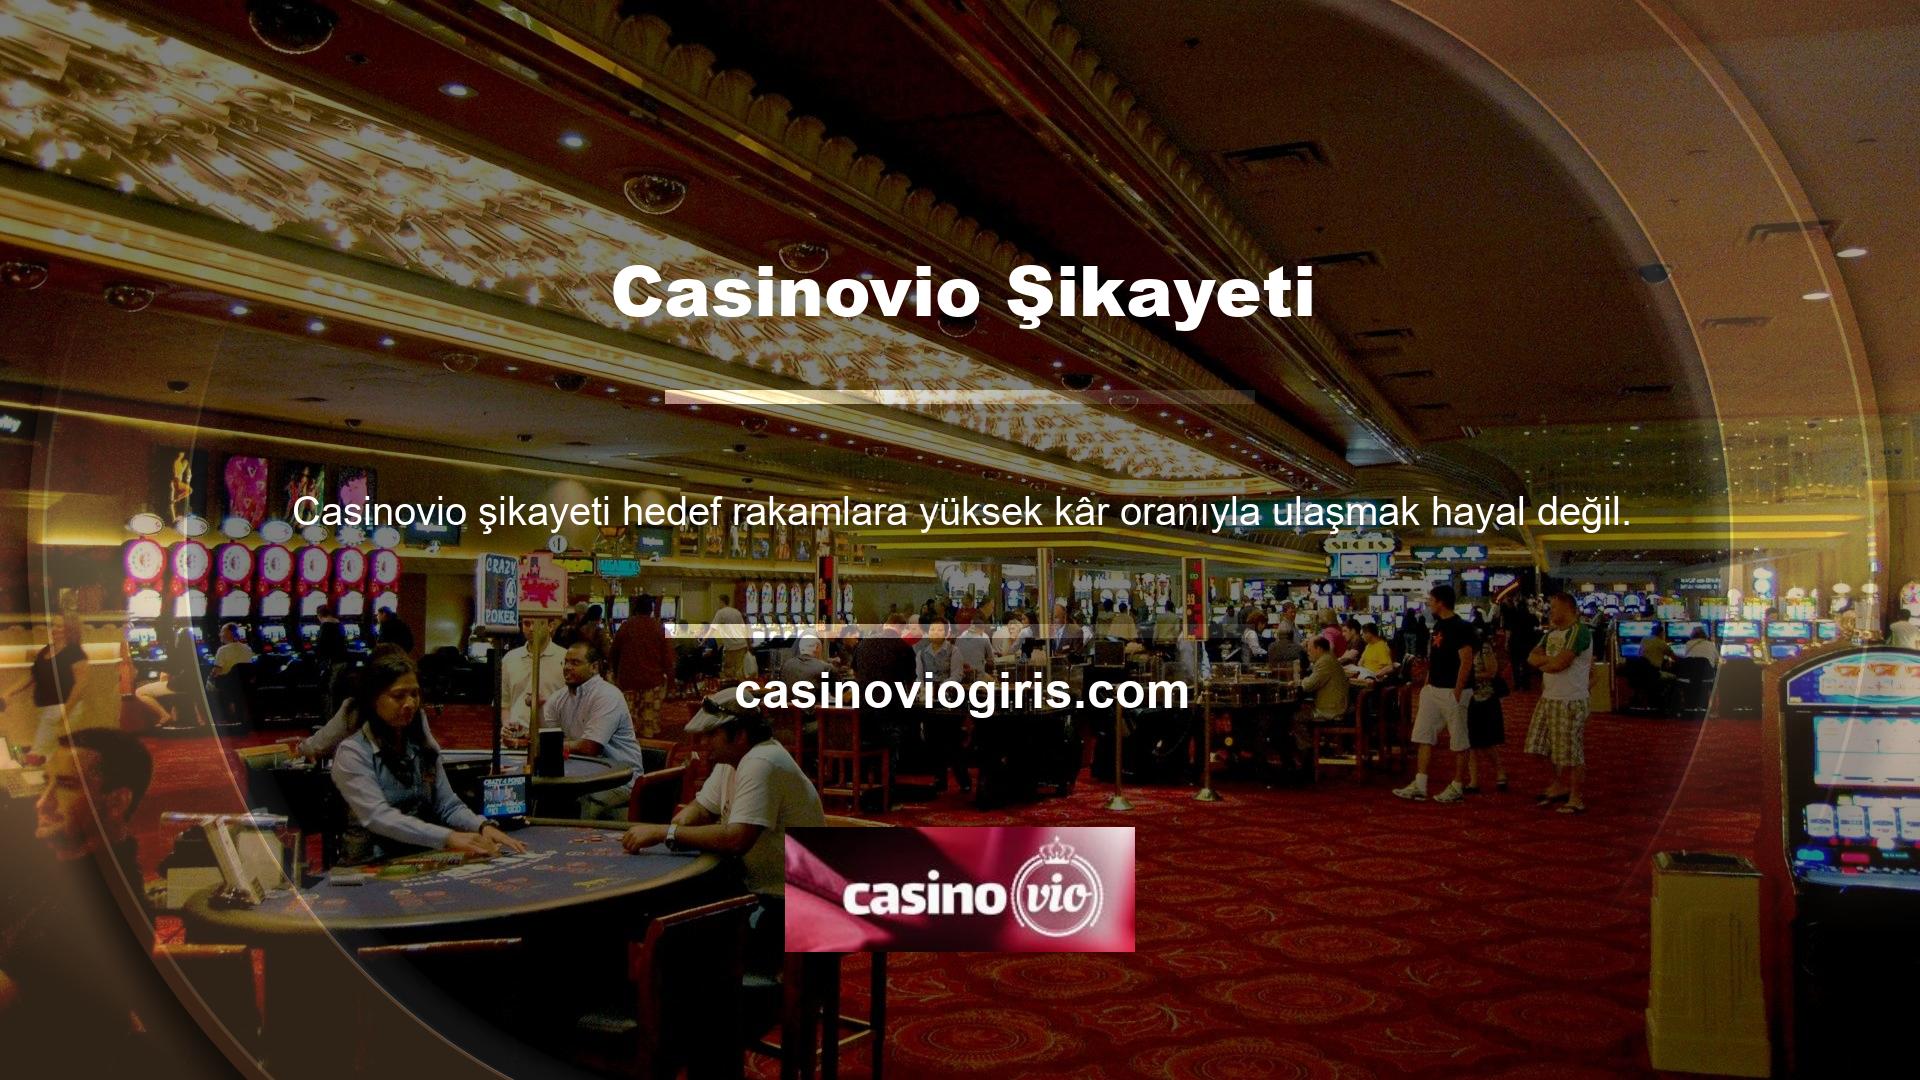 Casinovio hiçbir şikayeti kabul etmeyen sitelerden biridir ve saygın hiçbir web sitesinde zengin oyun içeriği ve tatmin edici teklifler bulamazsınız